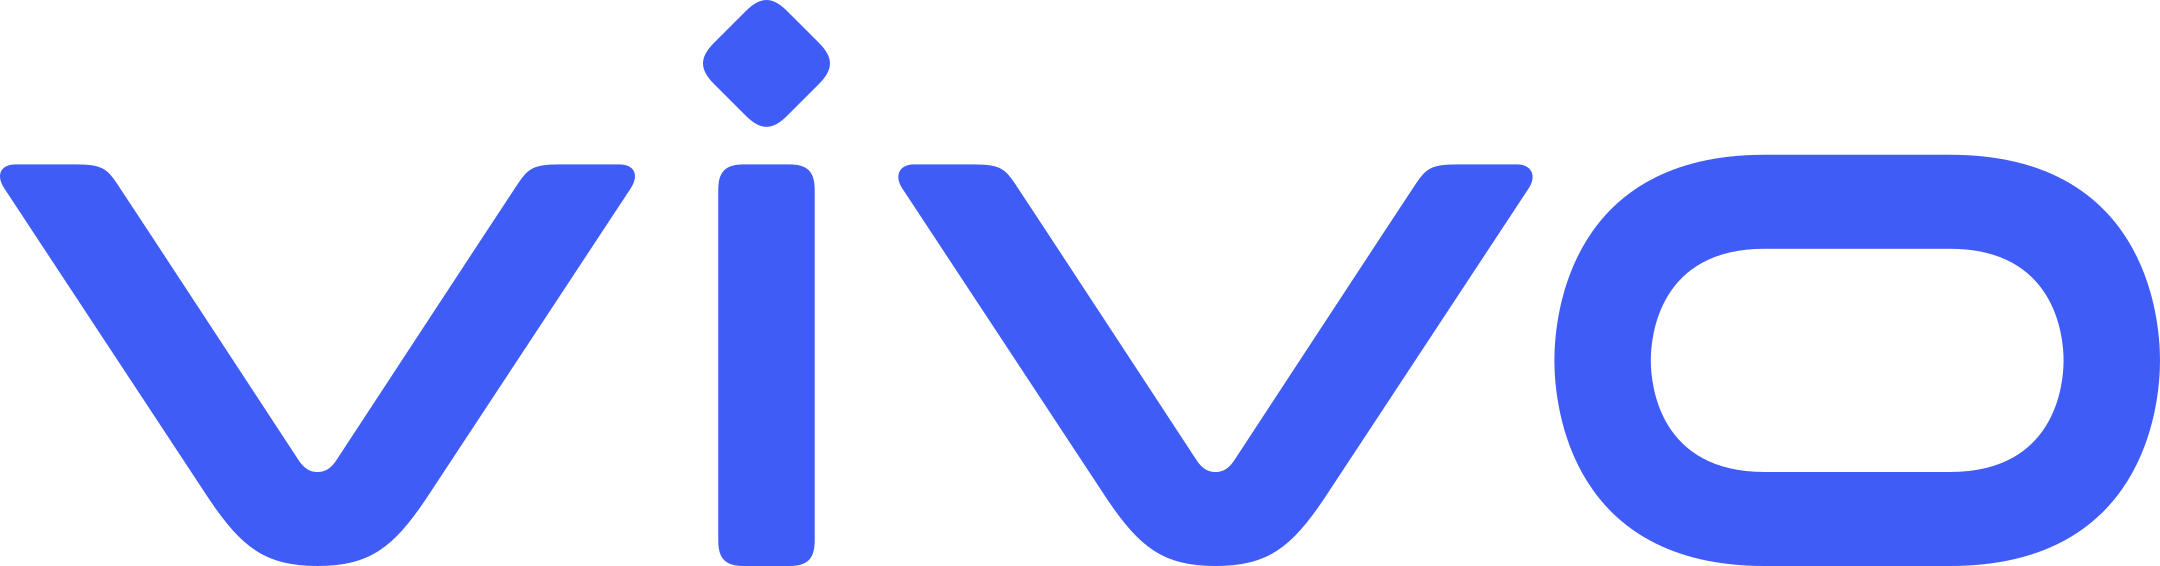 vivo smartphones logo 1 - Vivo Smartphones Logo